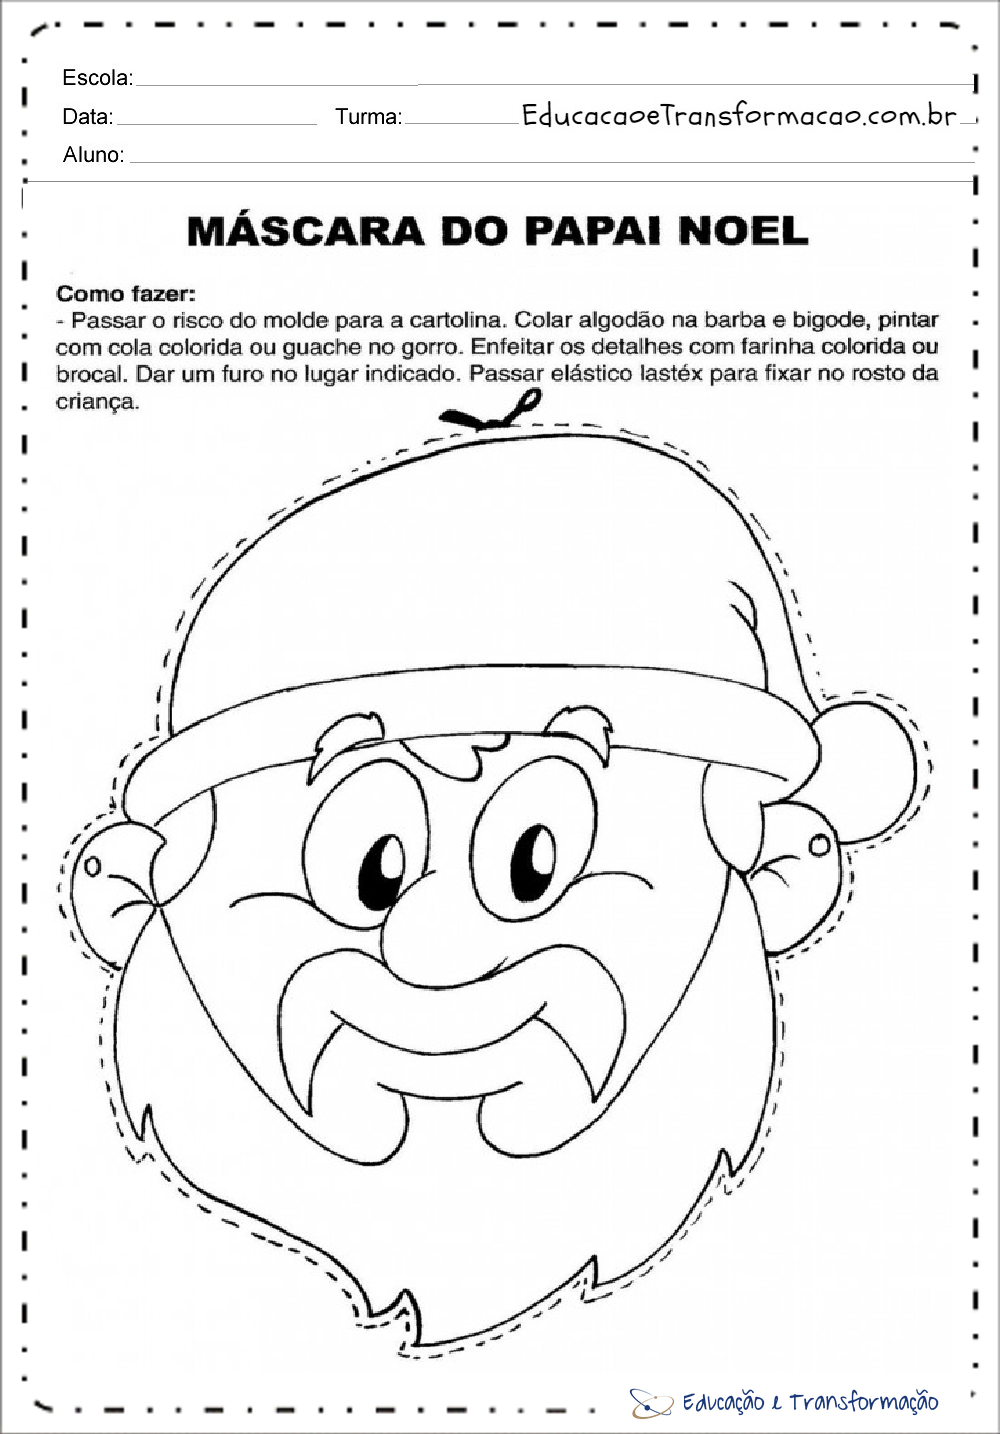 Atividades de Natal para educação infantil - Para imprimir - Series Iniciais